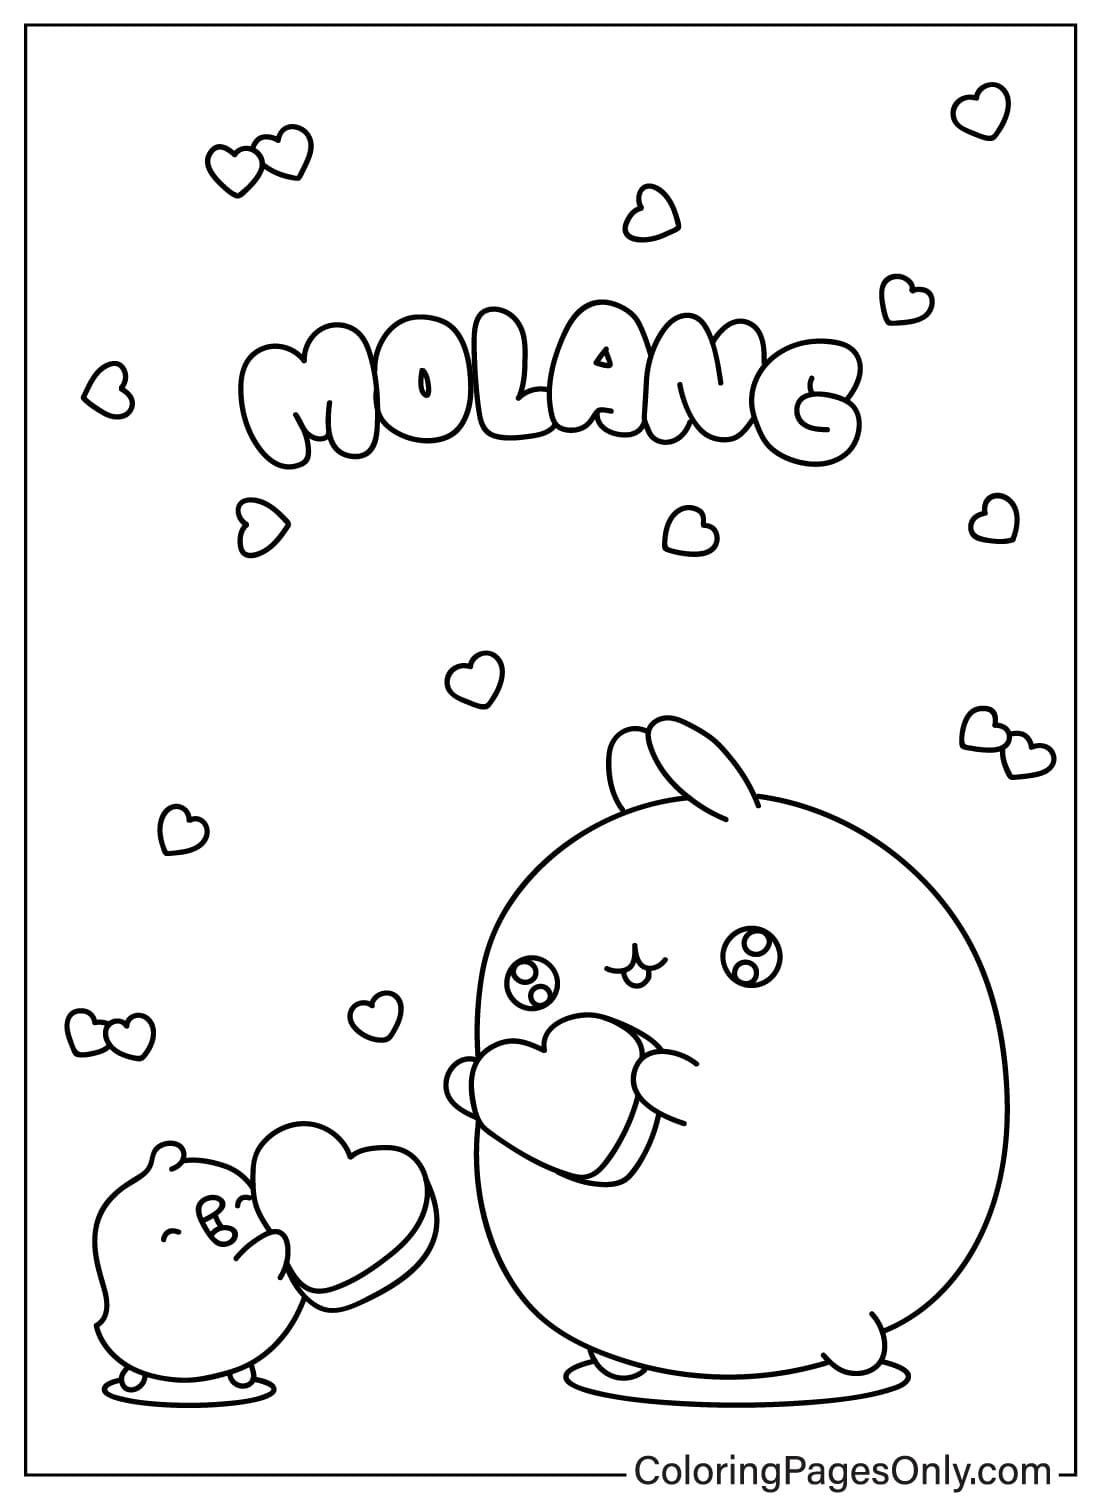 Página para colorear de Molang y Piu Piu con corazón de Molang